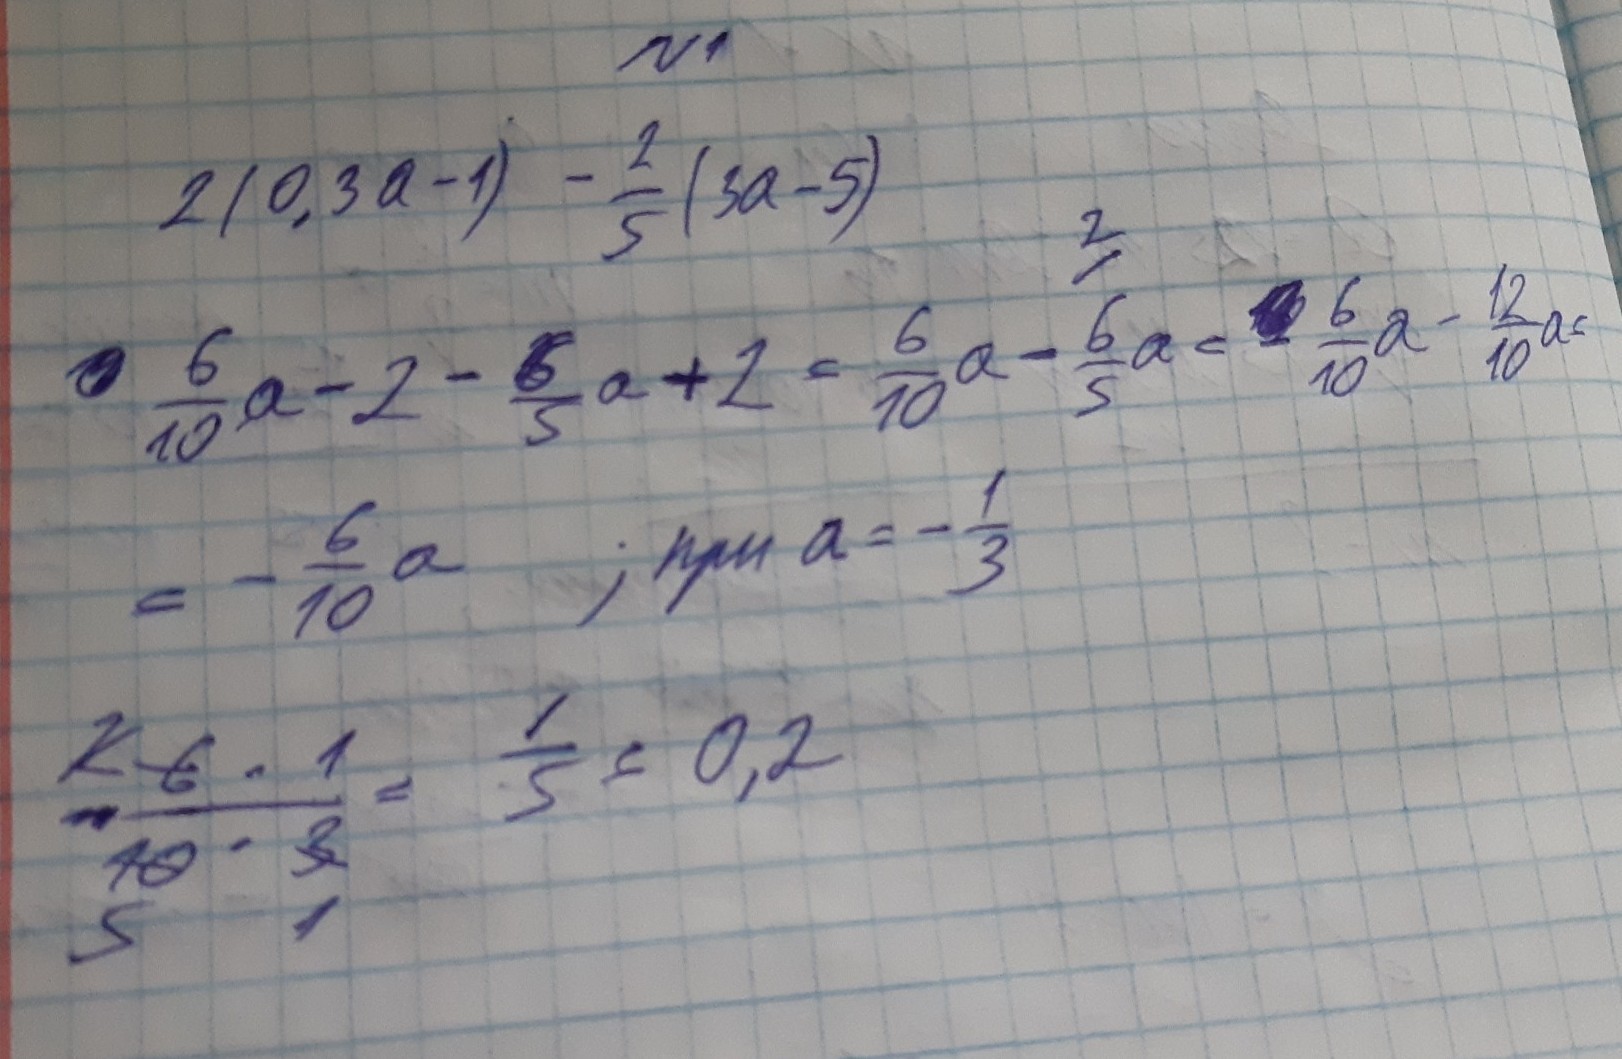 А2 3 21. Что такое 5 1 3 1. (3a-2)2-(a+1)(a+5). 2с1 и 2с3. 1/3 И 2/3.